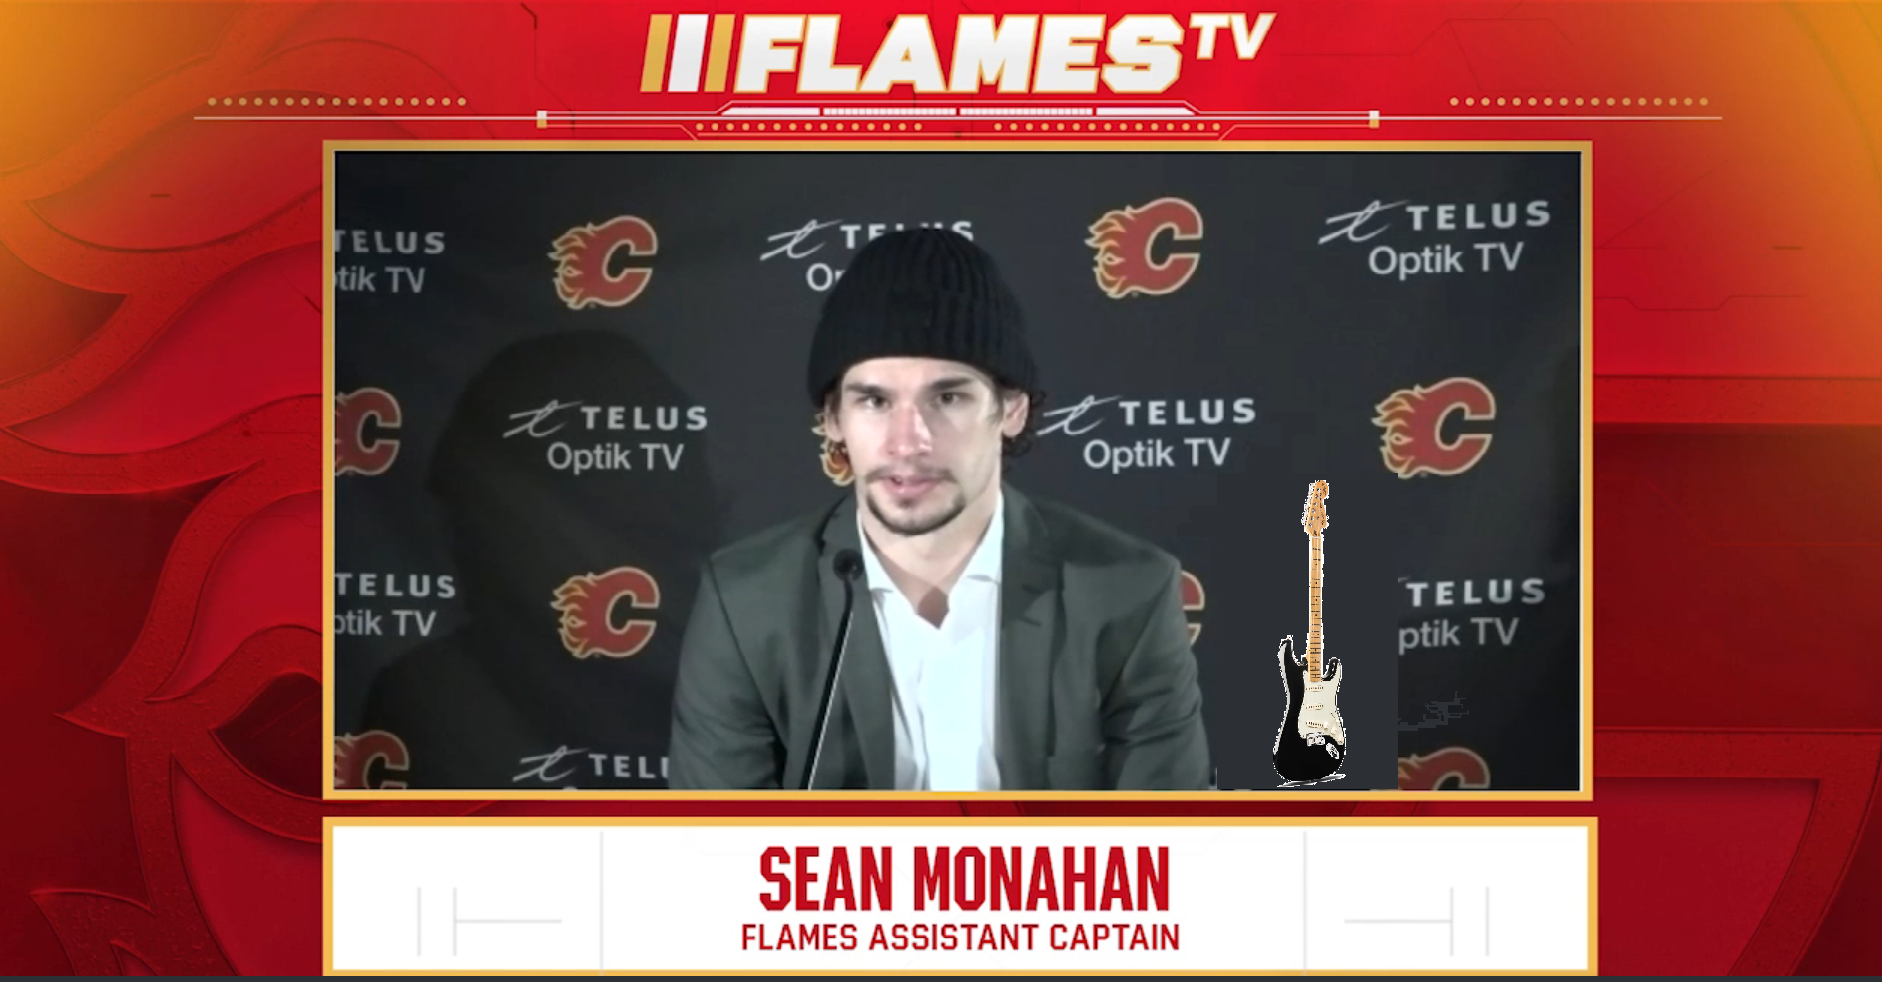 Sean Monahan looking for an Edge